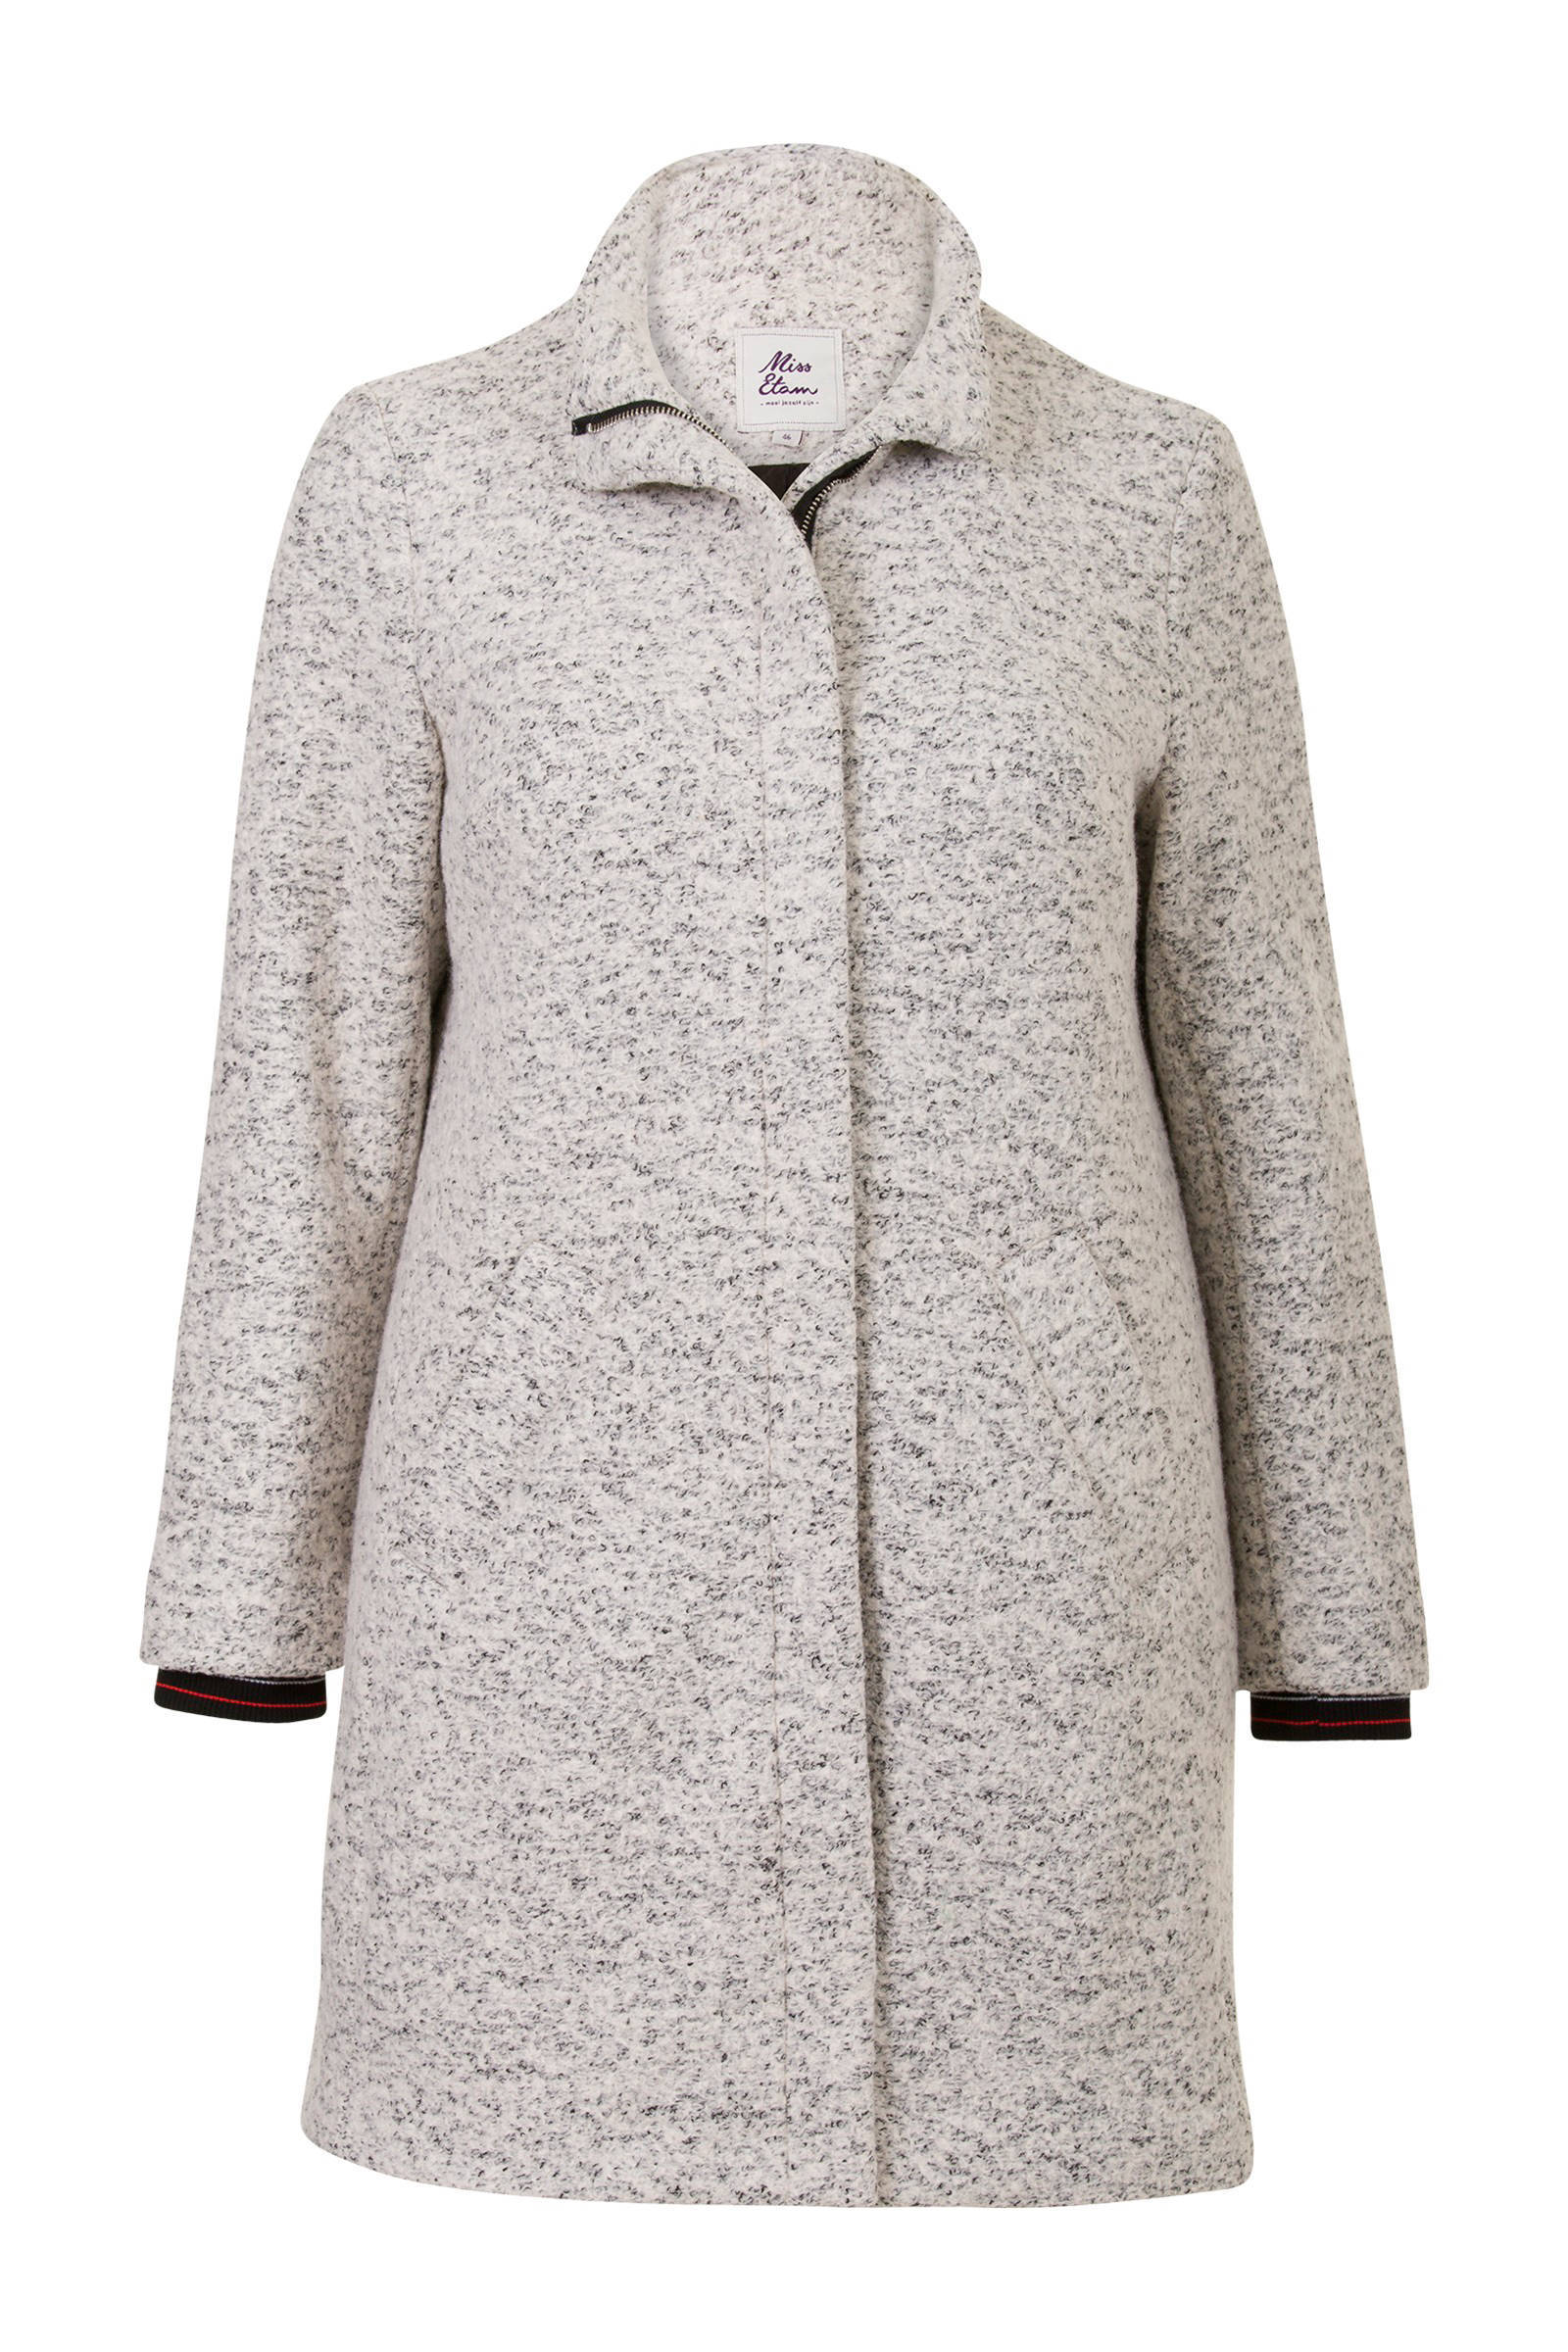 Miss Etam Plus jas met wol grijs online kopen